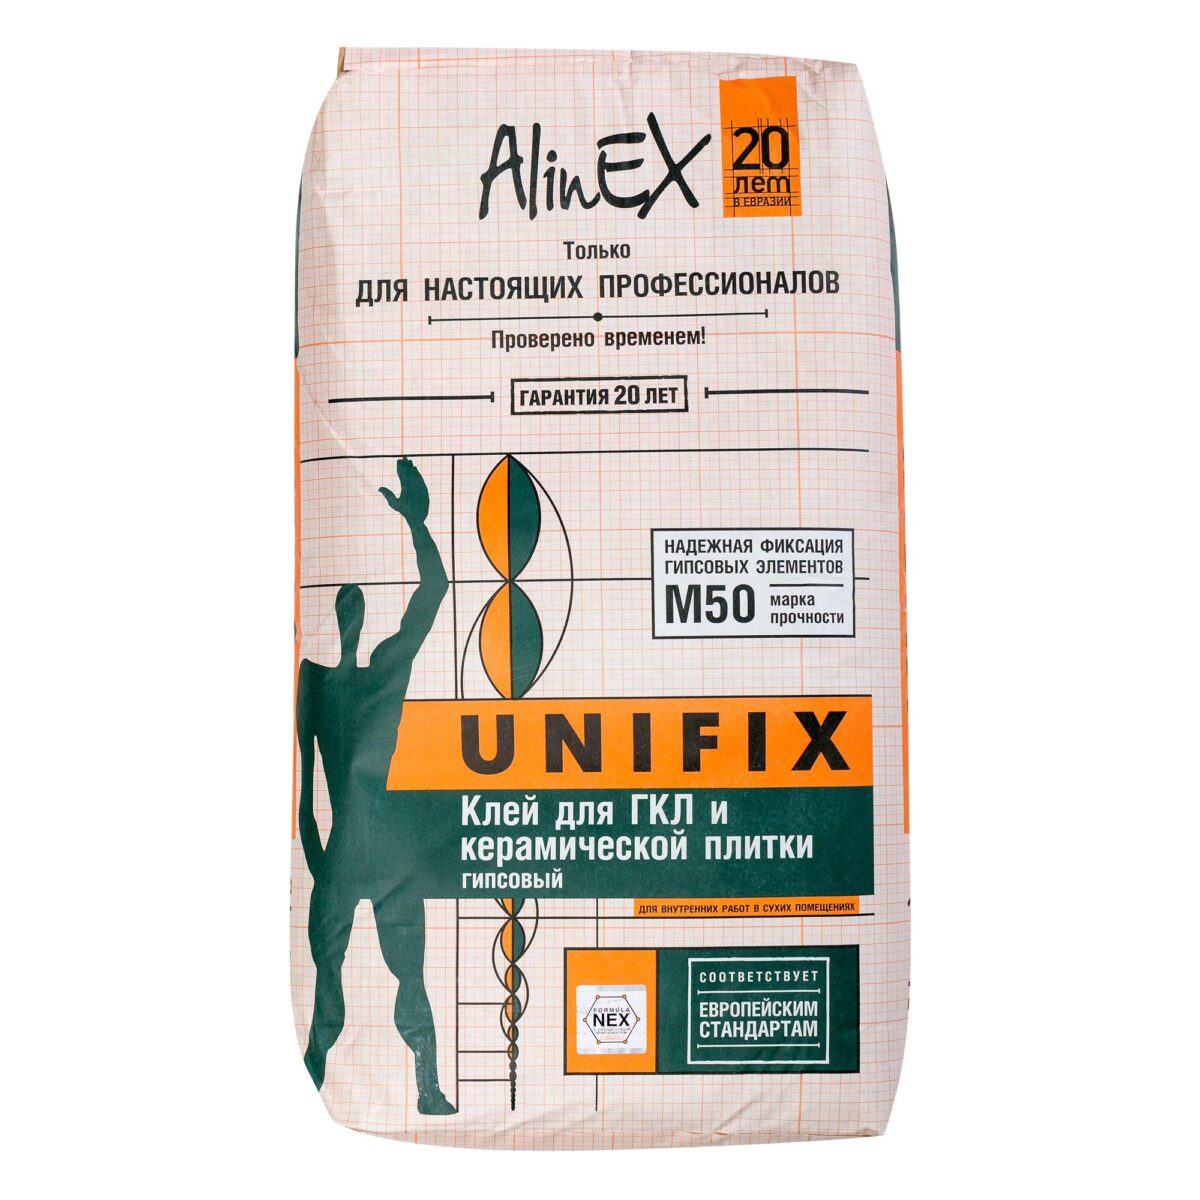 Alinex клей для гипсокартона Унификс 25 кг